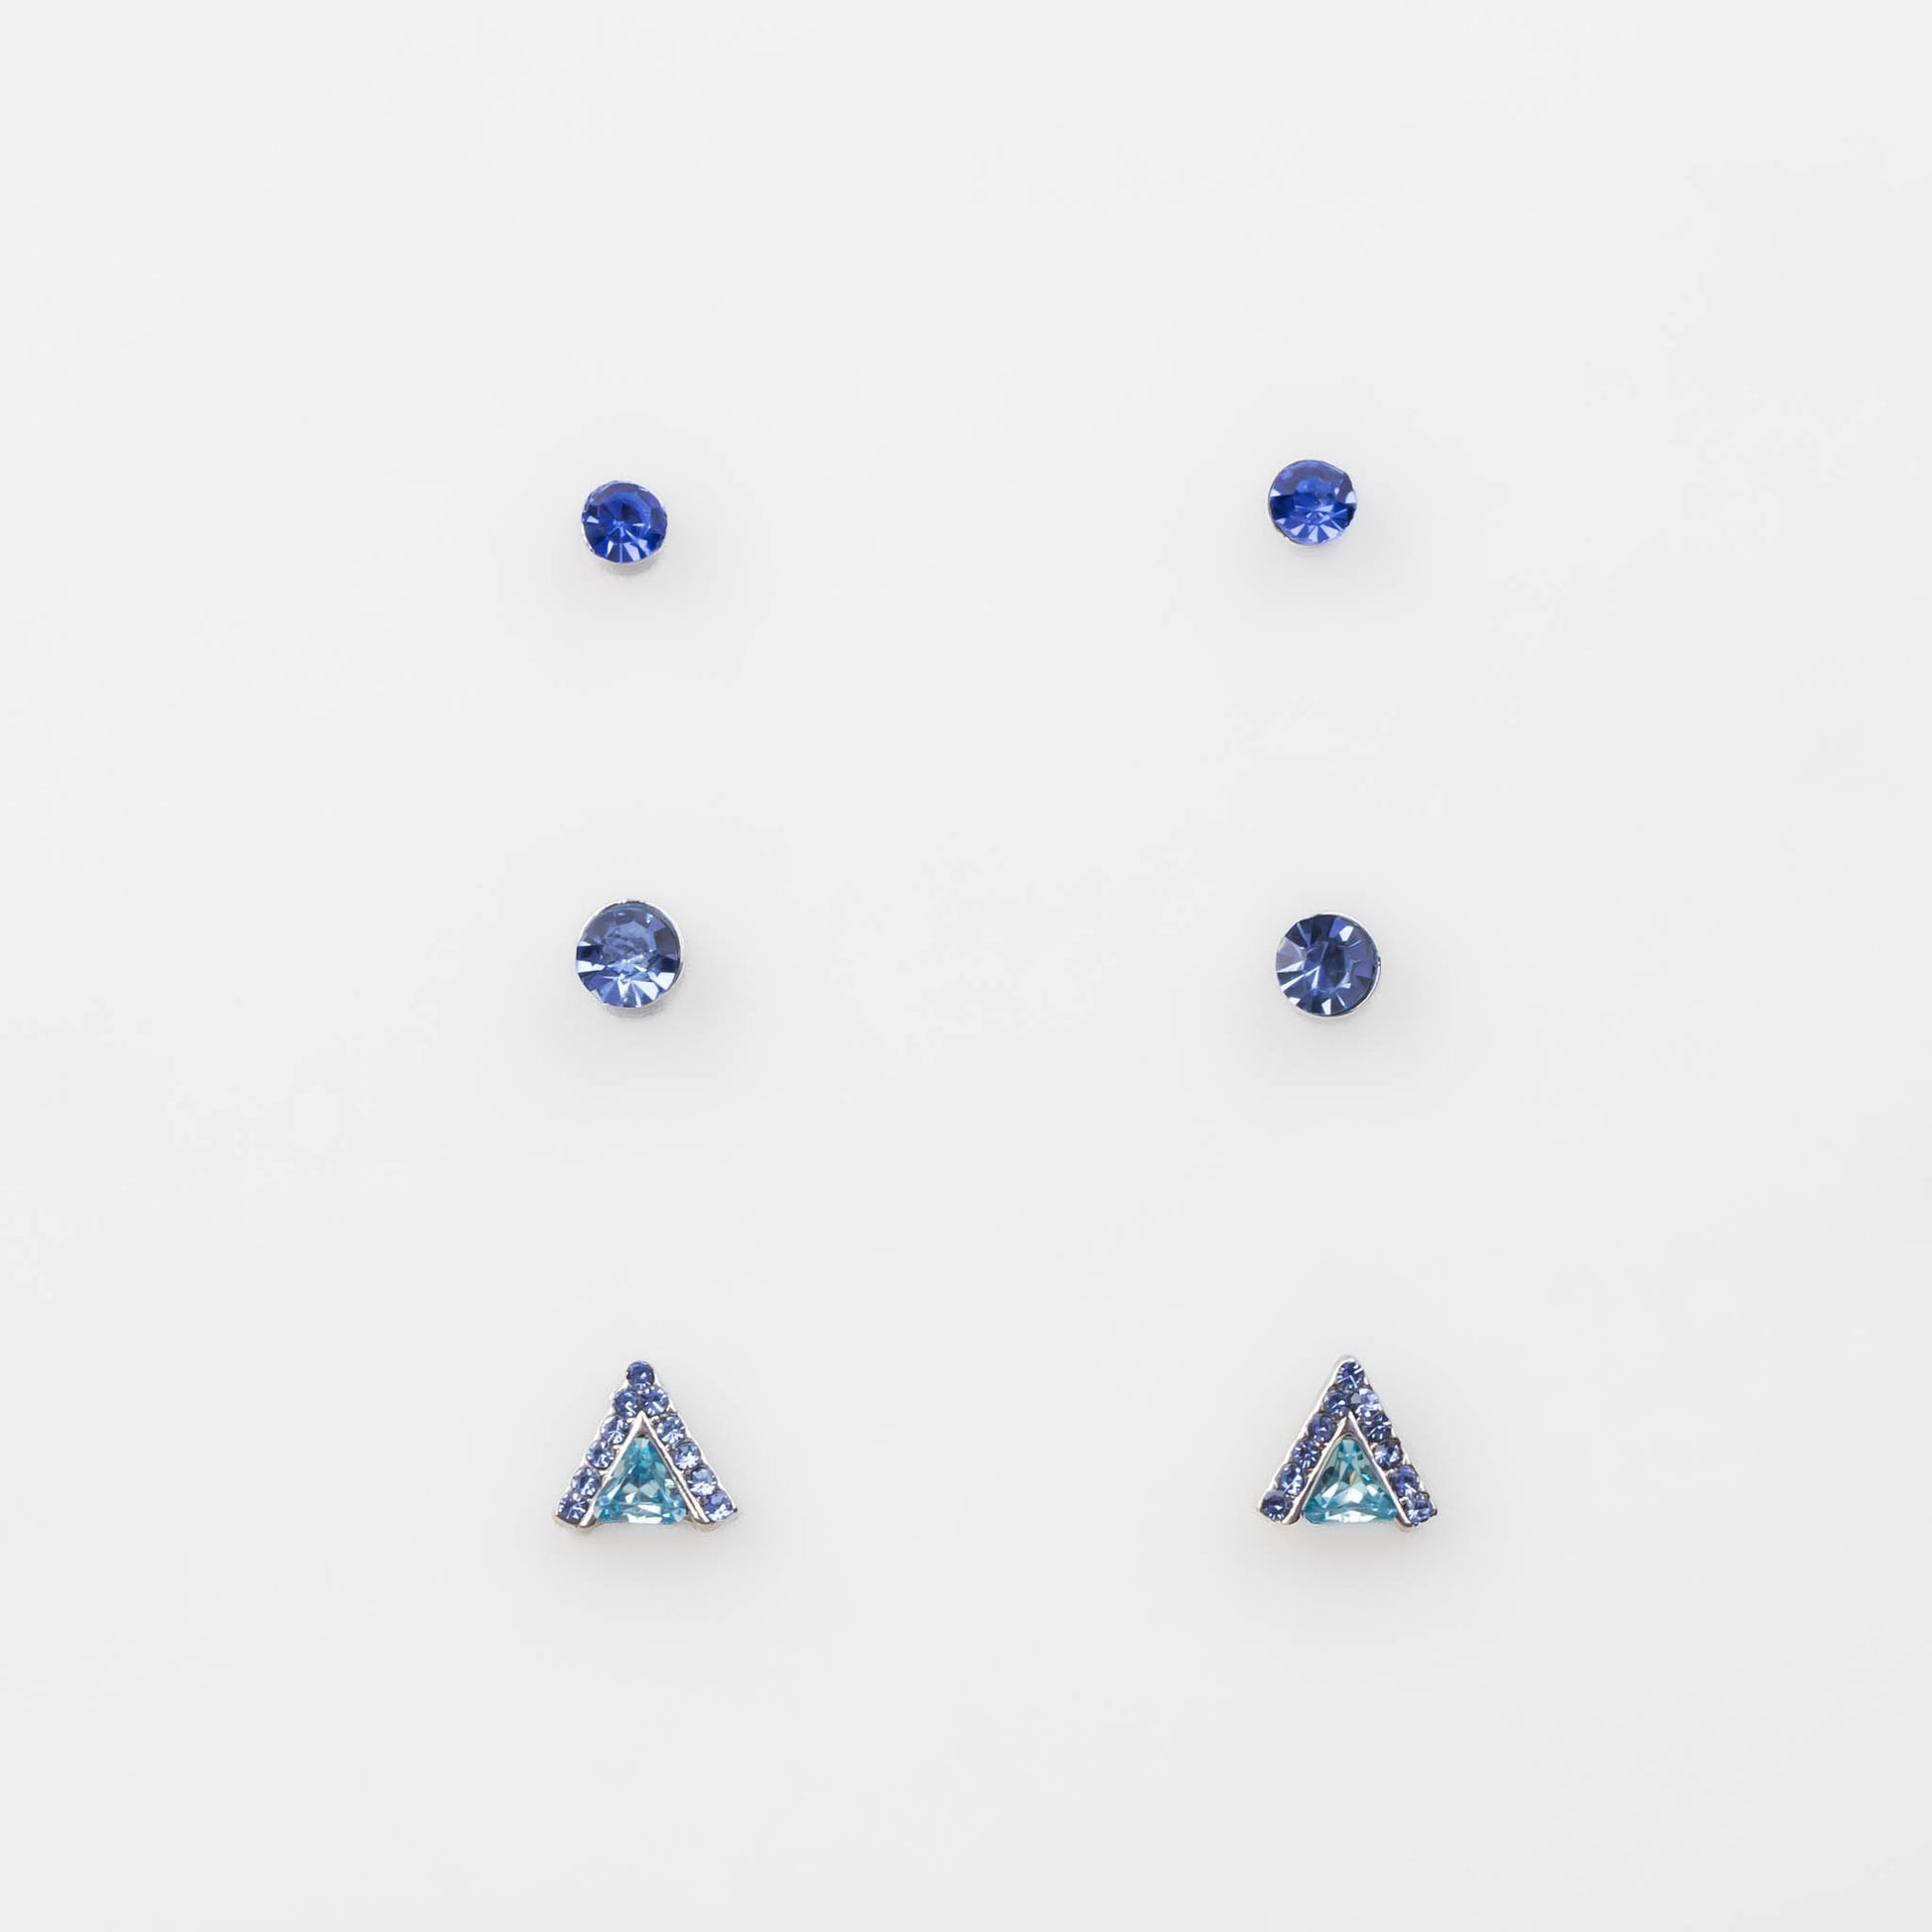 Cercei mici argintii cu triunghi și pietre strălucitoare, set 3 buc - Albastru